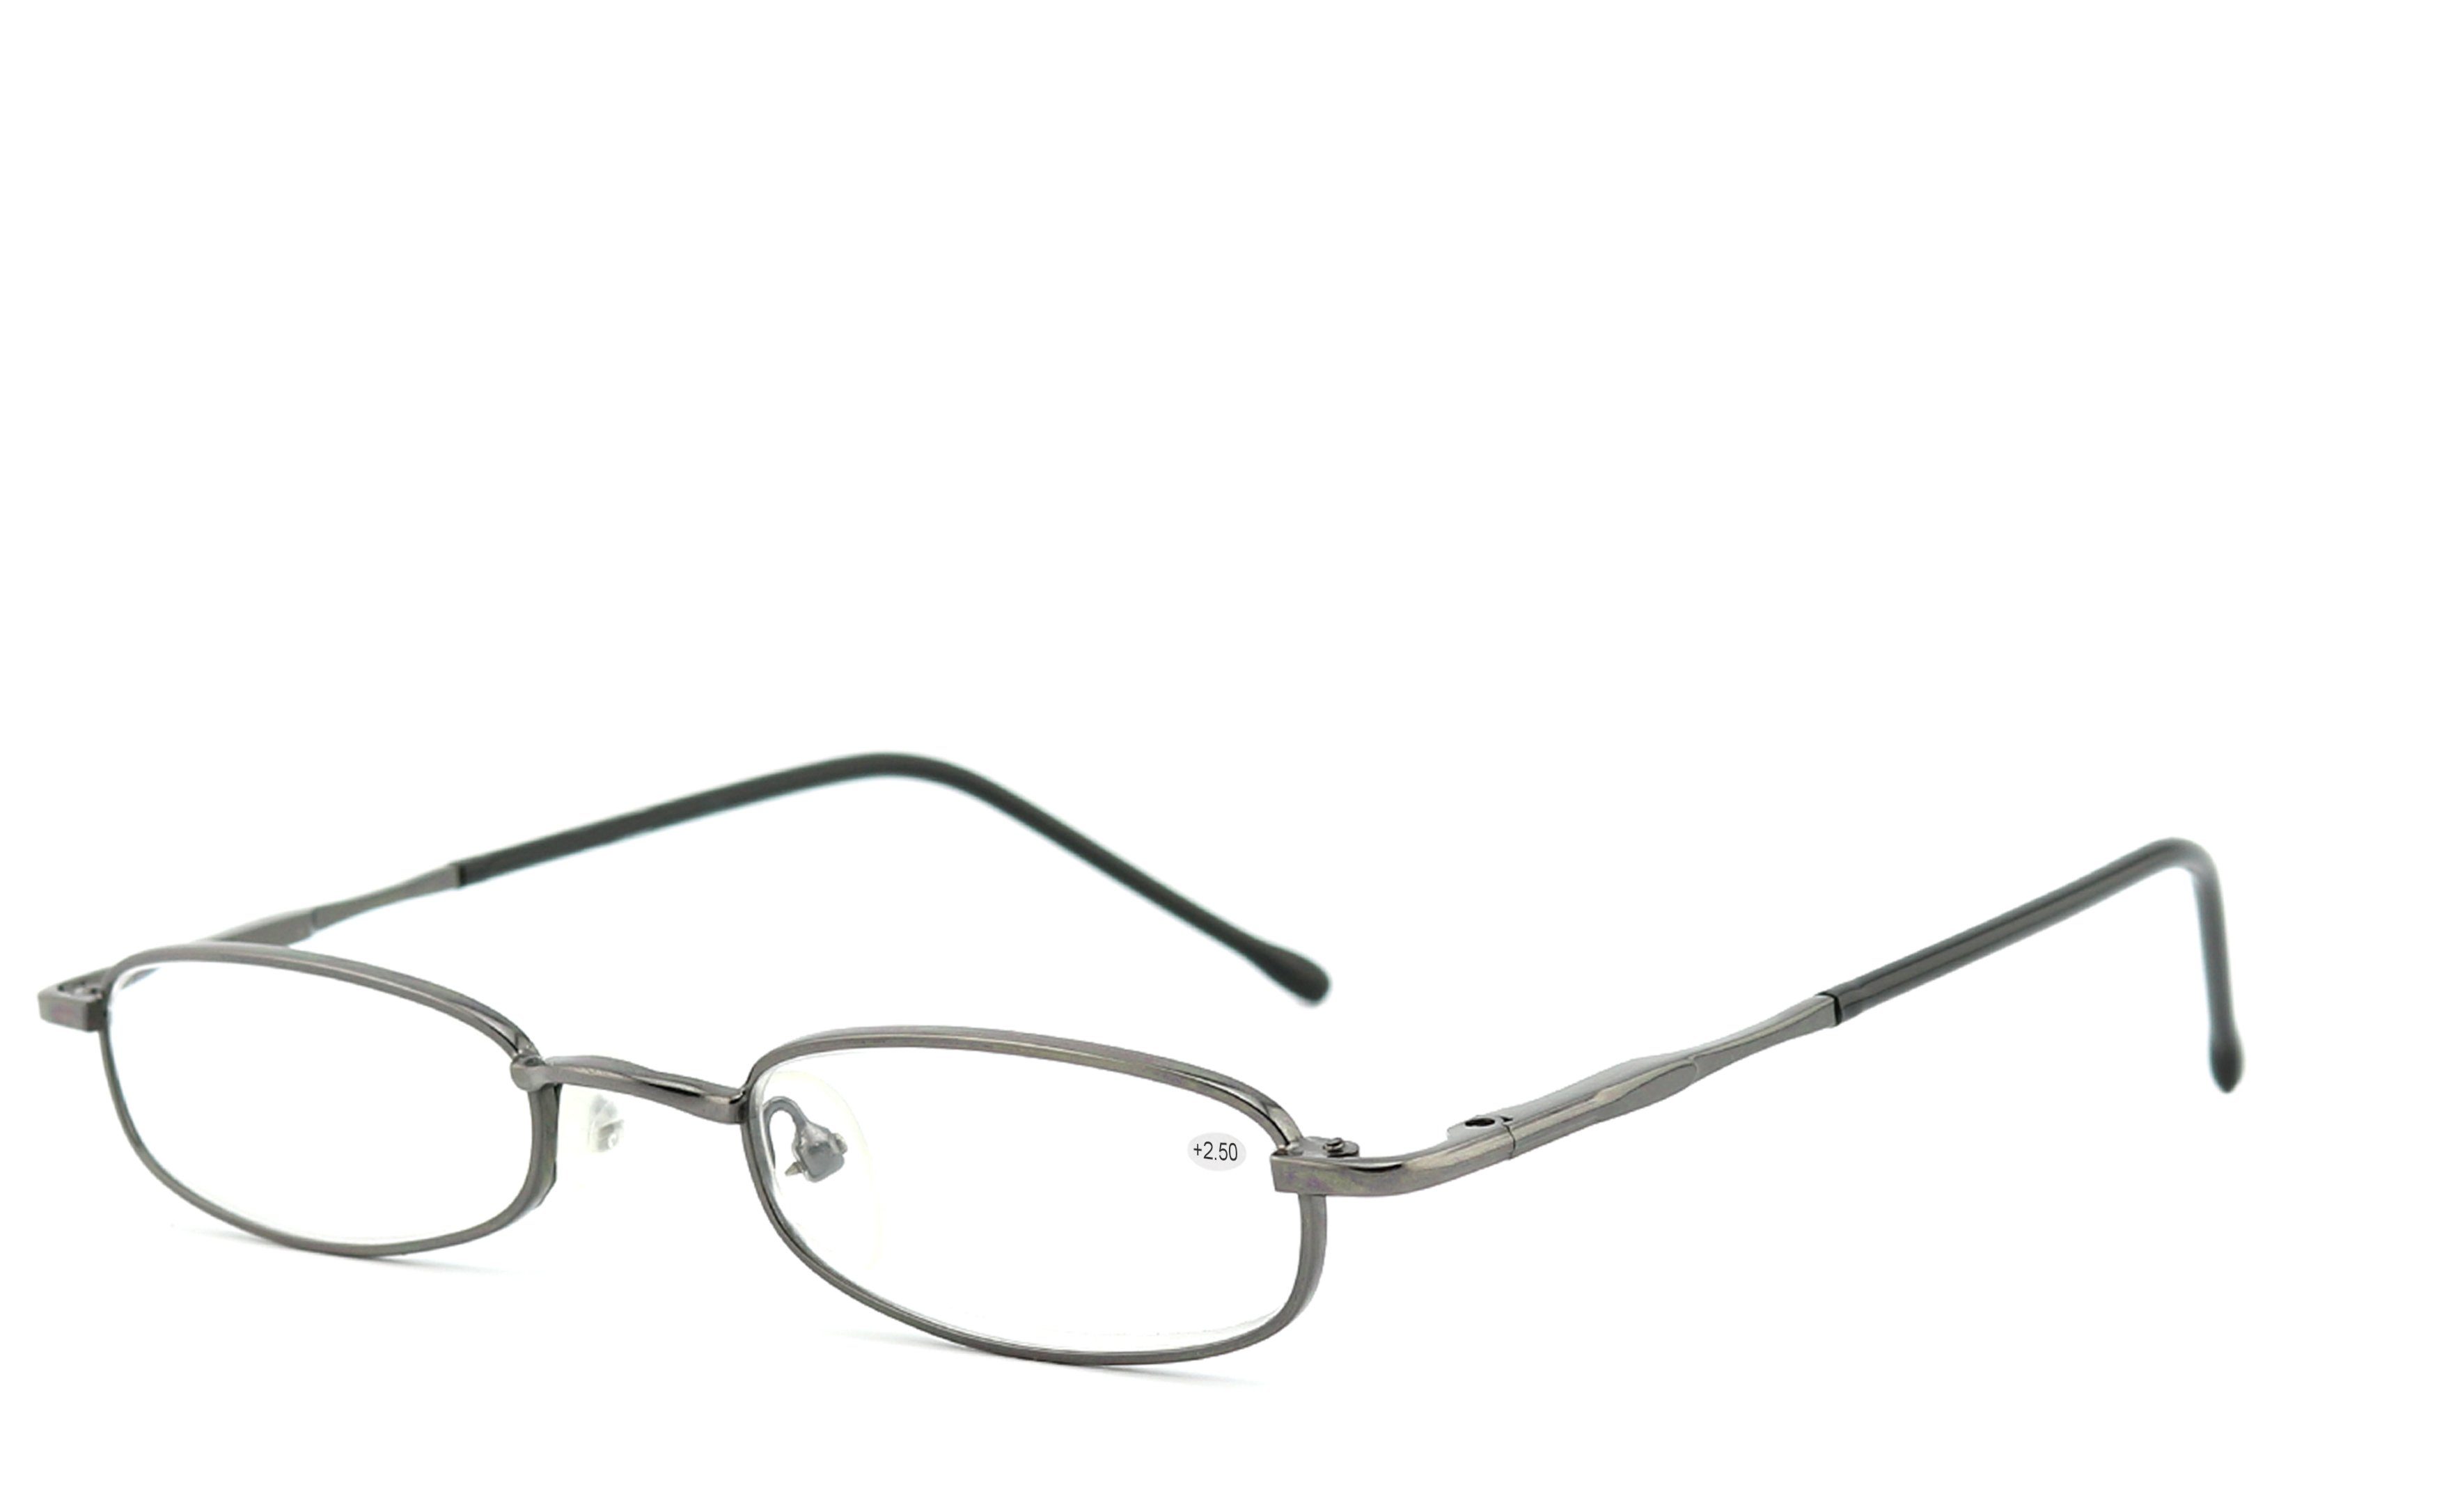 EYESTUFF Lesebrille Lesebrille schwarz-chrom, Brillenbügel mit Flex-Scharnieren hochwertigen